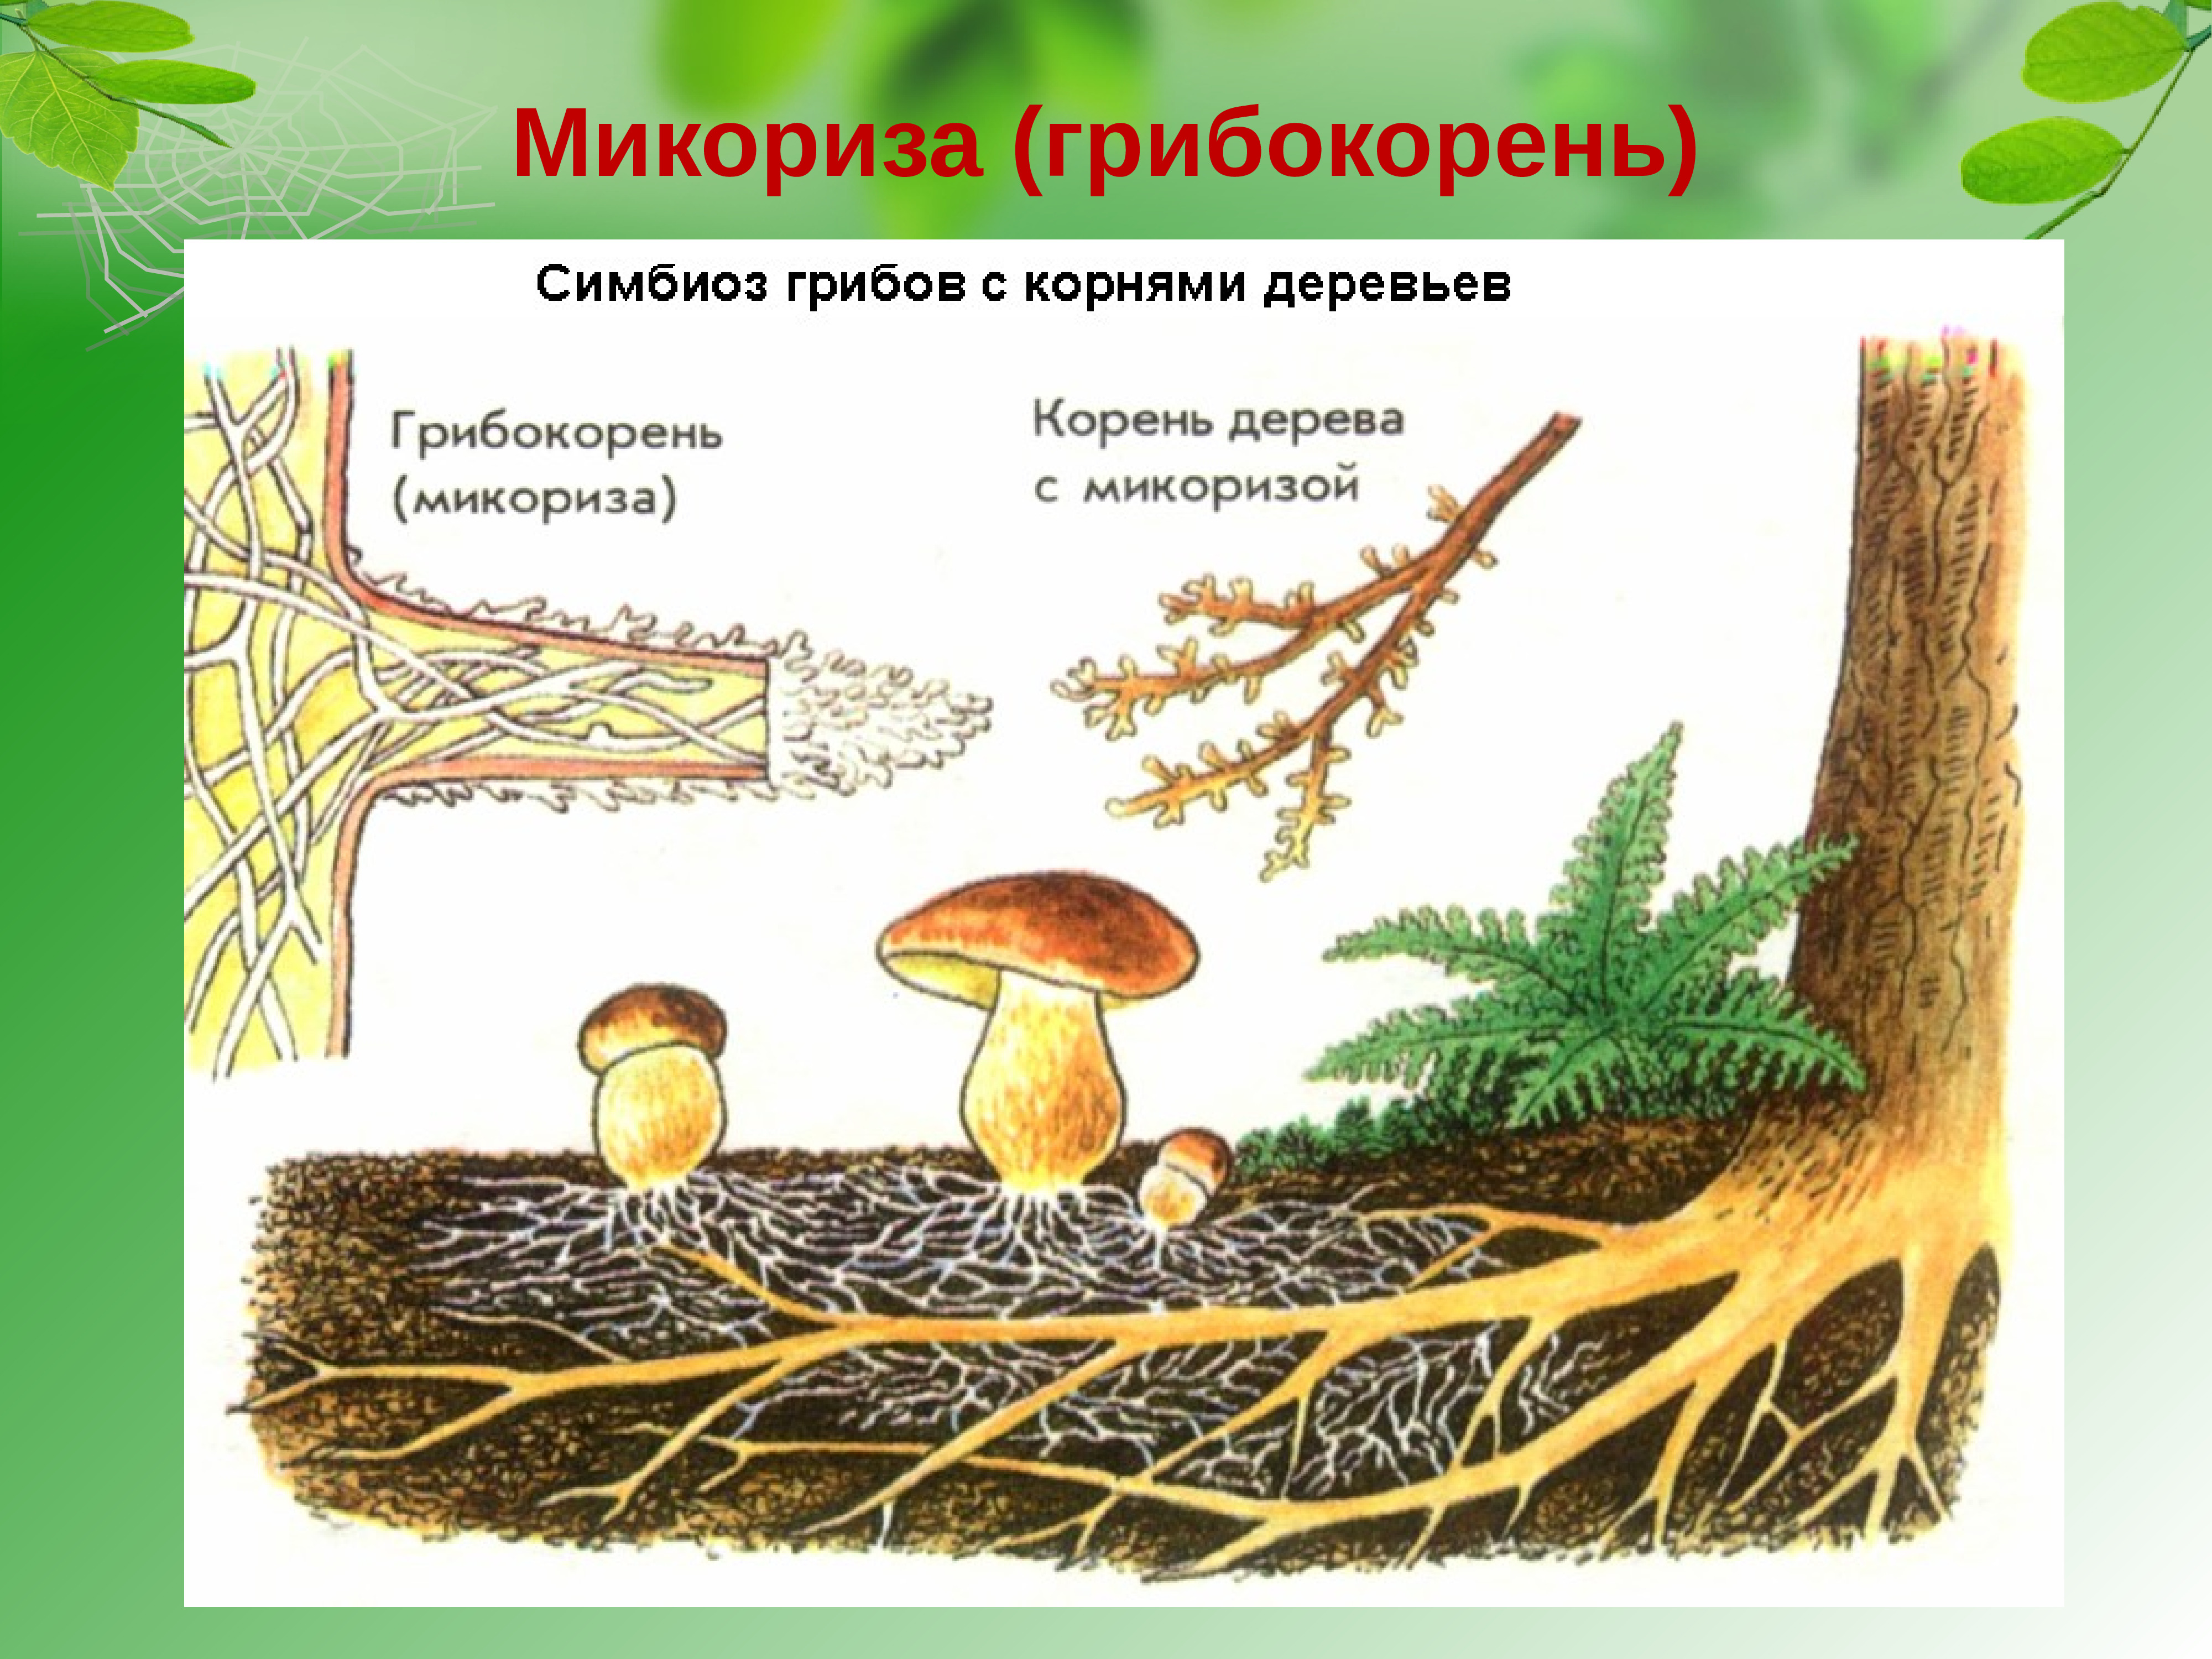 Шляпочный гриб и дерево. Шляпочные грибы микориза. Строение гриба микориза. Что такое микориза у грибов. Трюфель микориза.